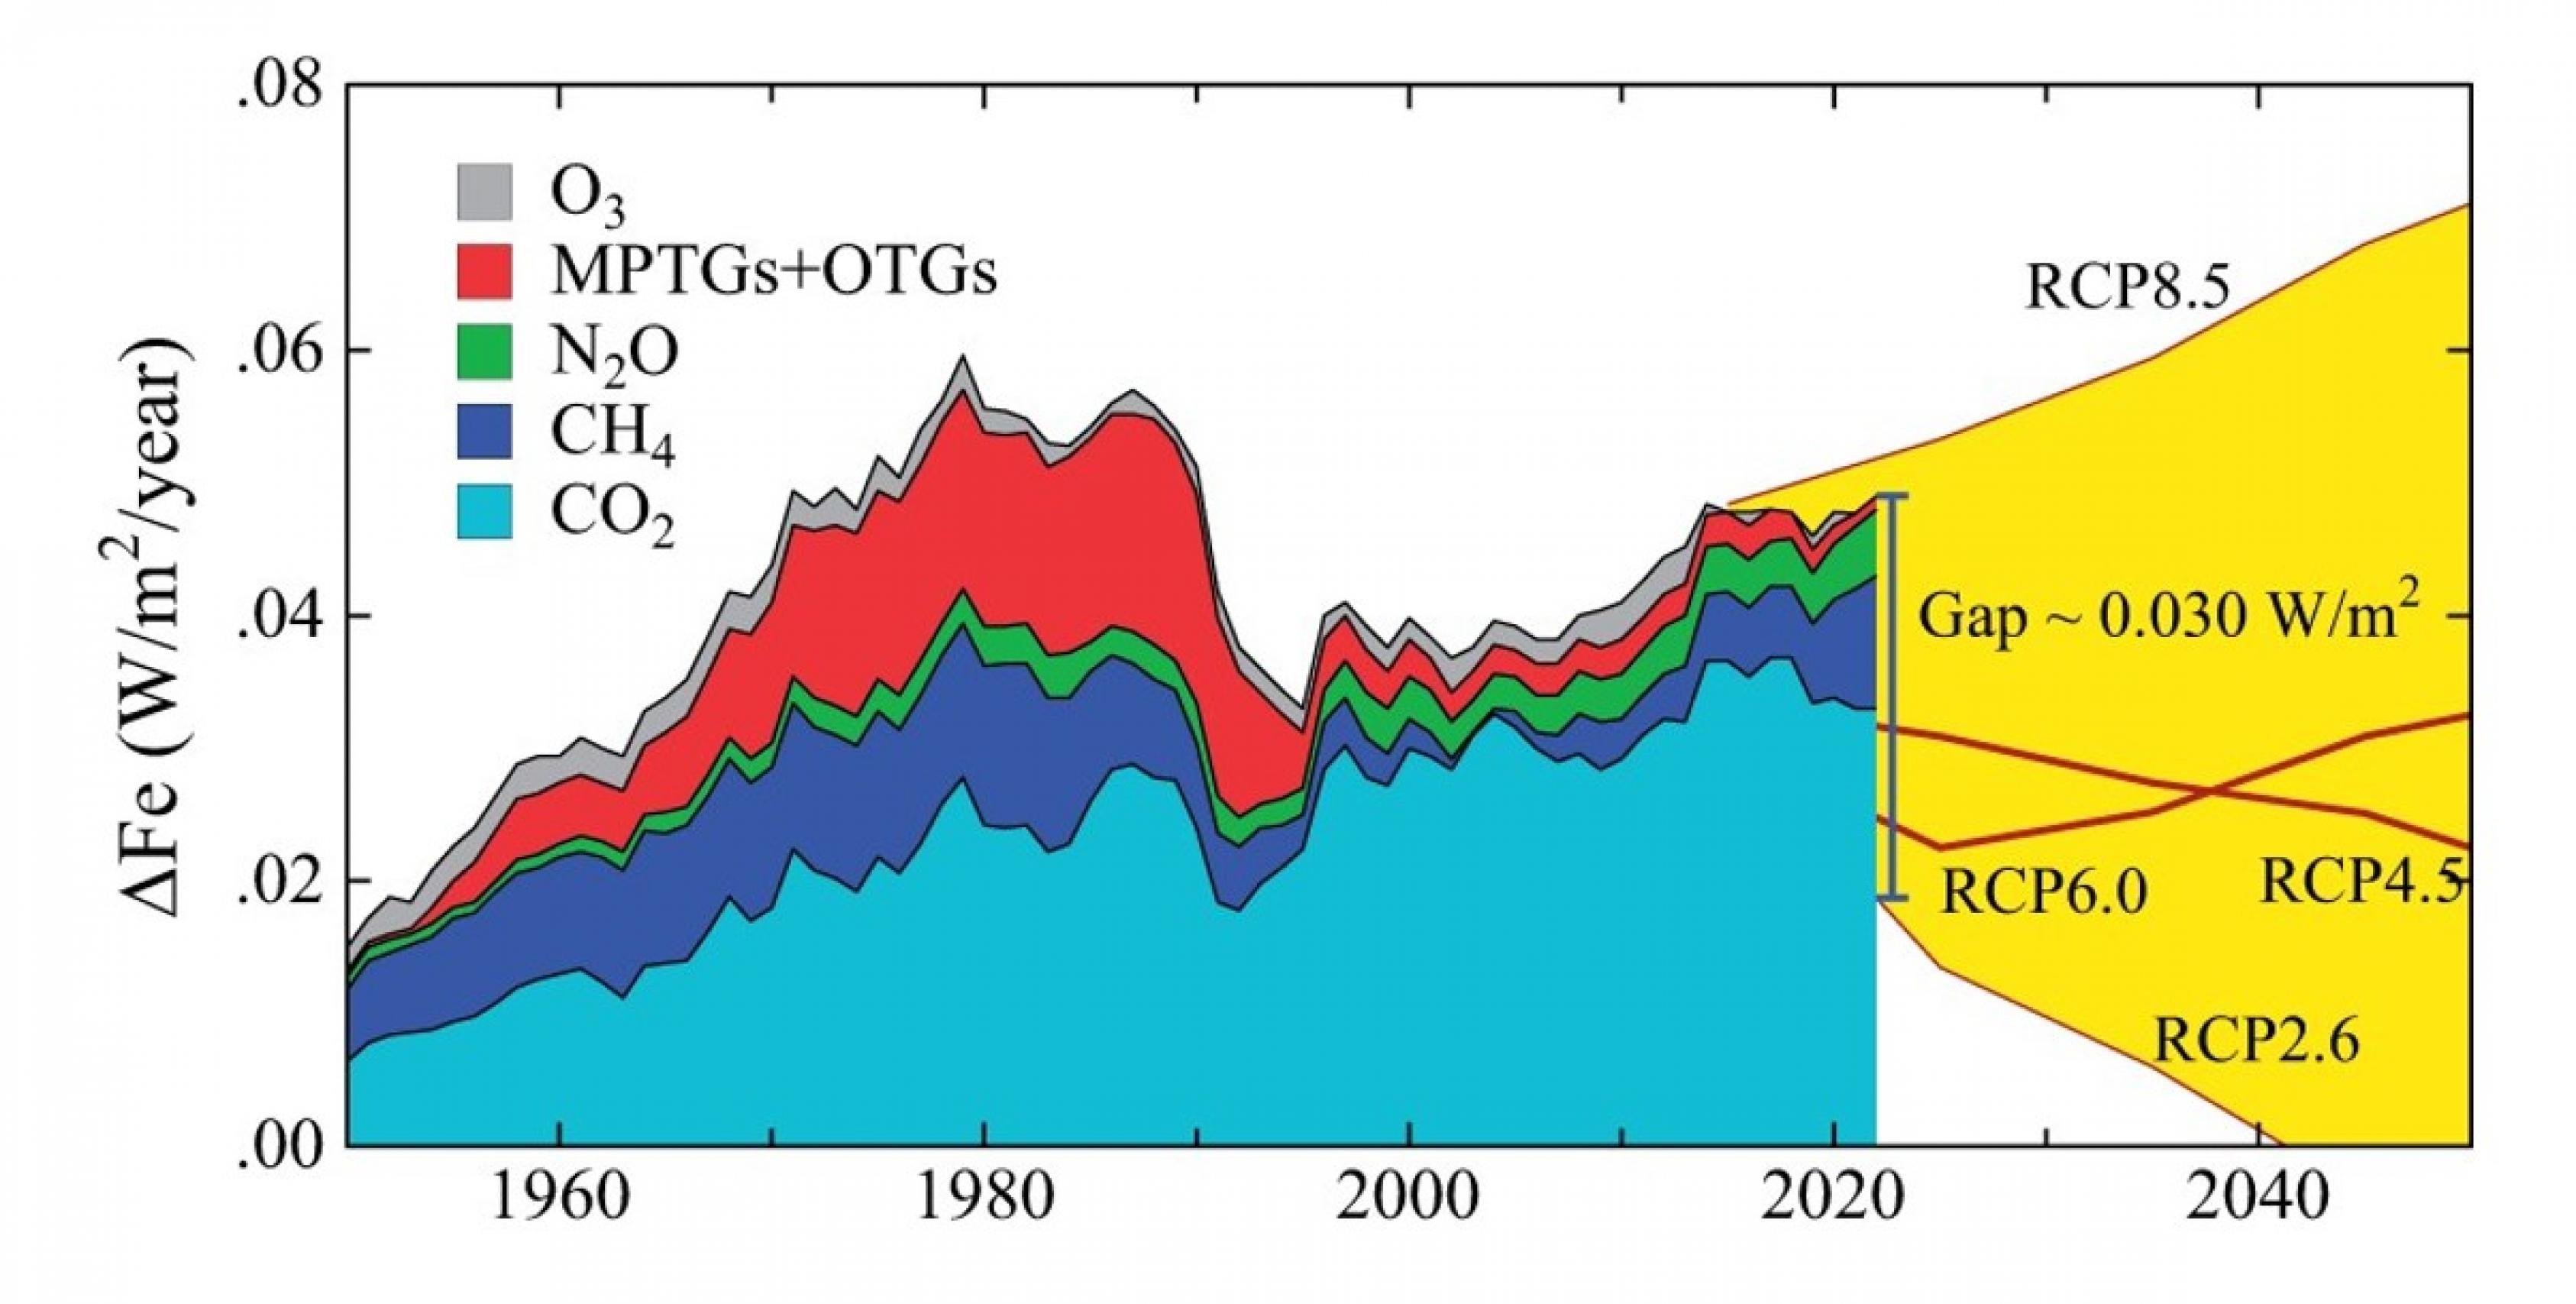 Jährliches Wachstum des Klimaantriebs durch Treibhausgase [38] einschließlich eines Teils des O3-Antriebs, der nicht im CH4-Antrieb enthalten ist (ergänzendes Material). MPTG und OTG stehen für Montreal Protocol und Other Trace Gases.